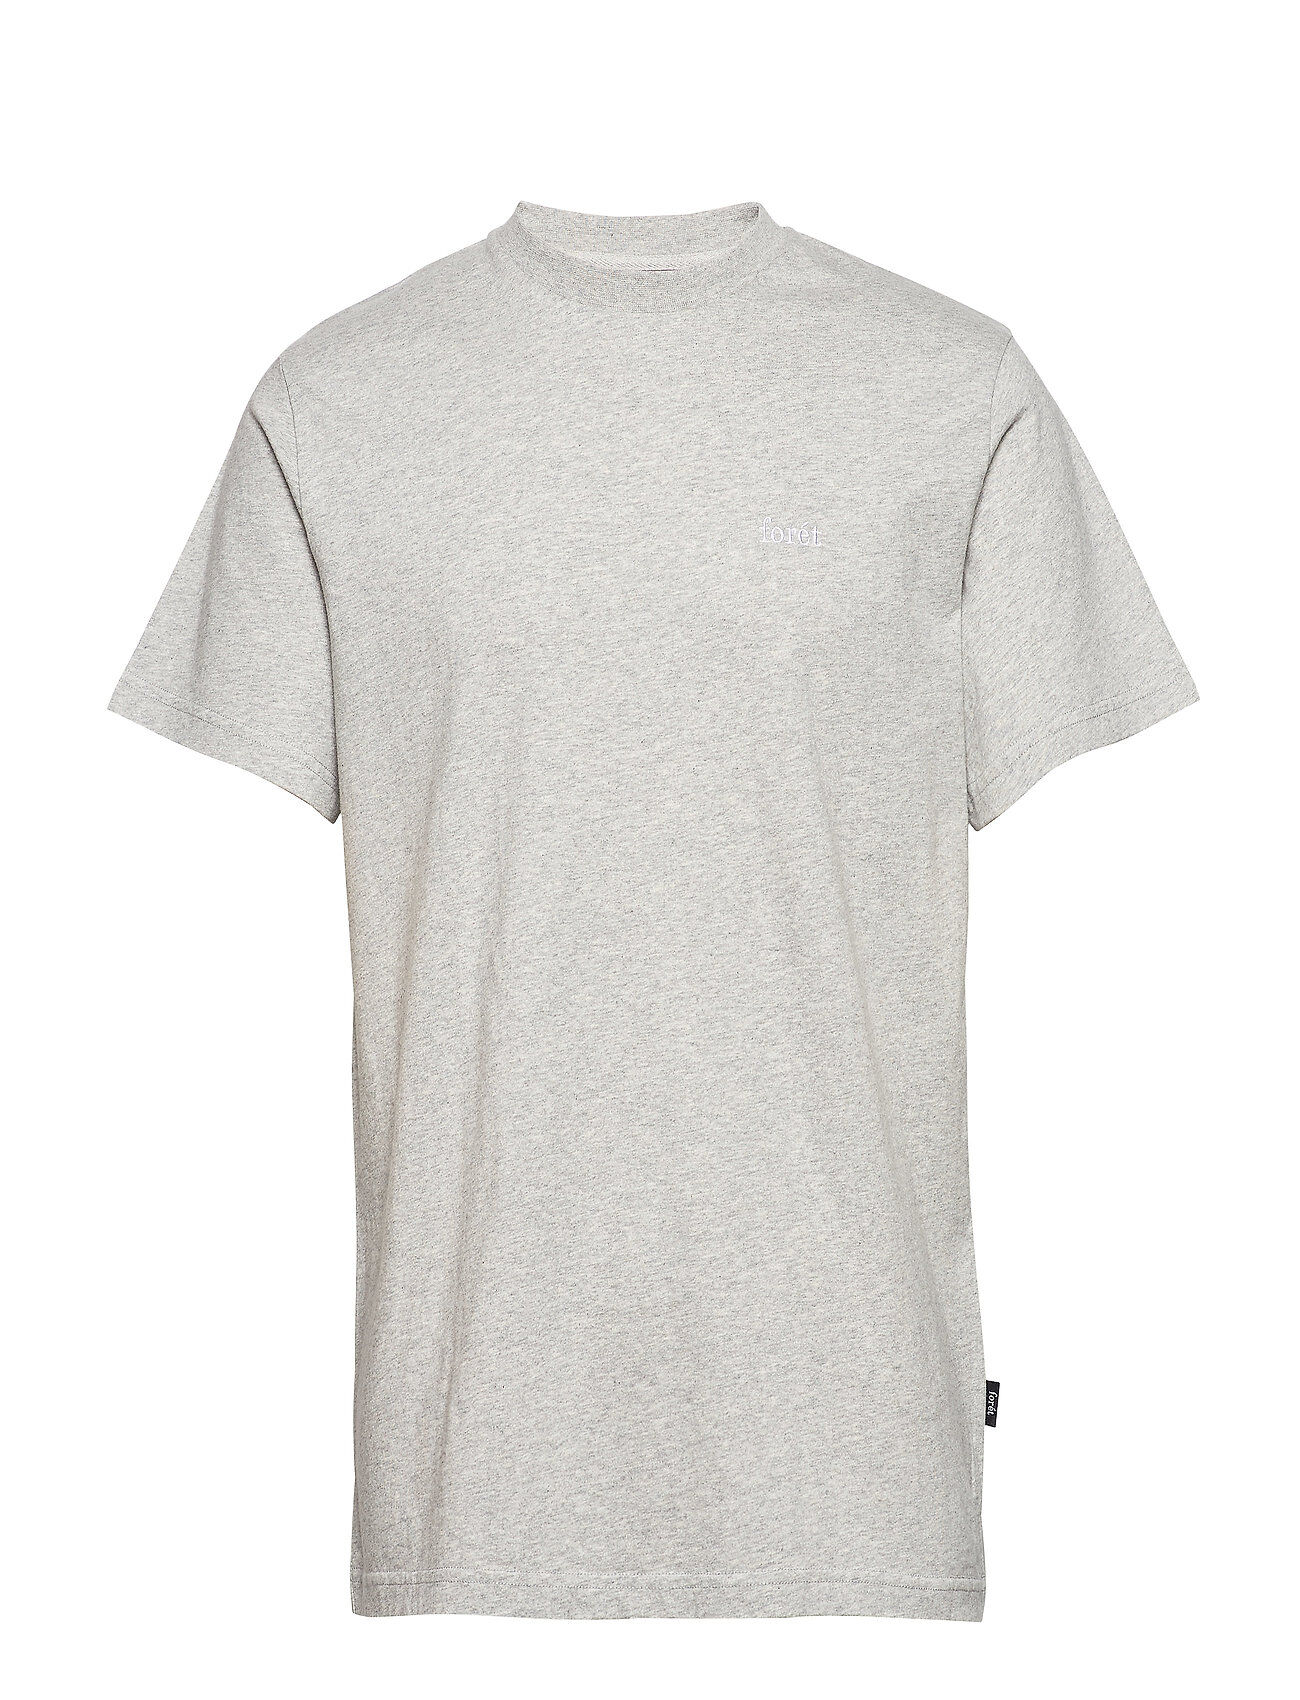 Forét Air T-Shirt T-shirts Short-sleeved Grå Forét